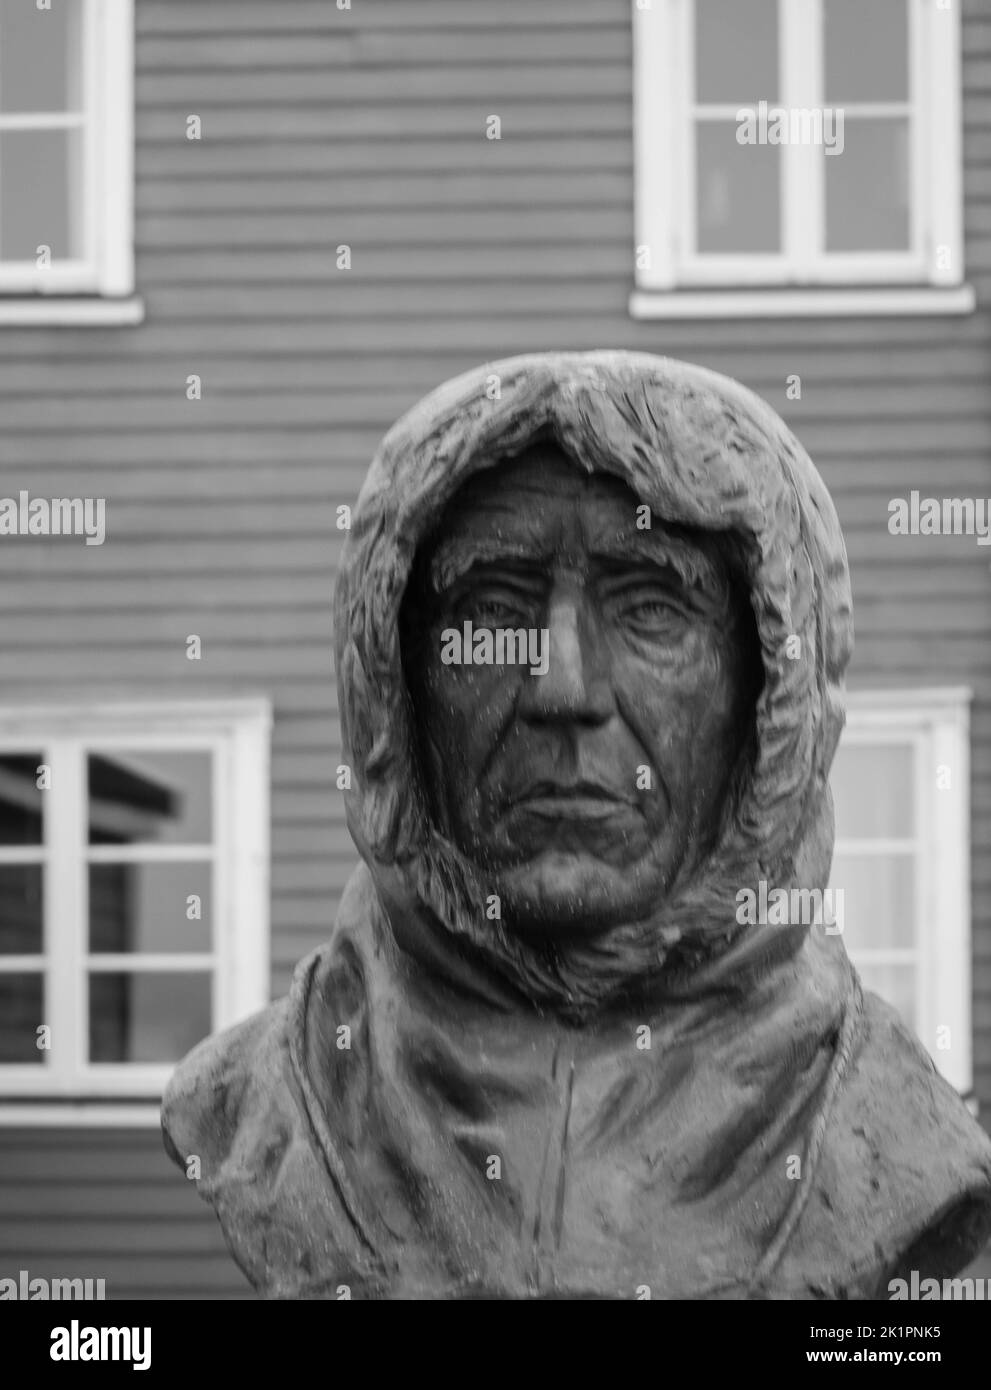 Un buste de Roald Amundsen dans le centre de NY Alesund. Amundsen a été le premier homme à atteindre le pôle Sud en 1911. Spitsbergen, Norvège. 25 juillet 2022 Banque D'Images